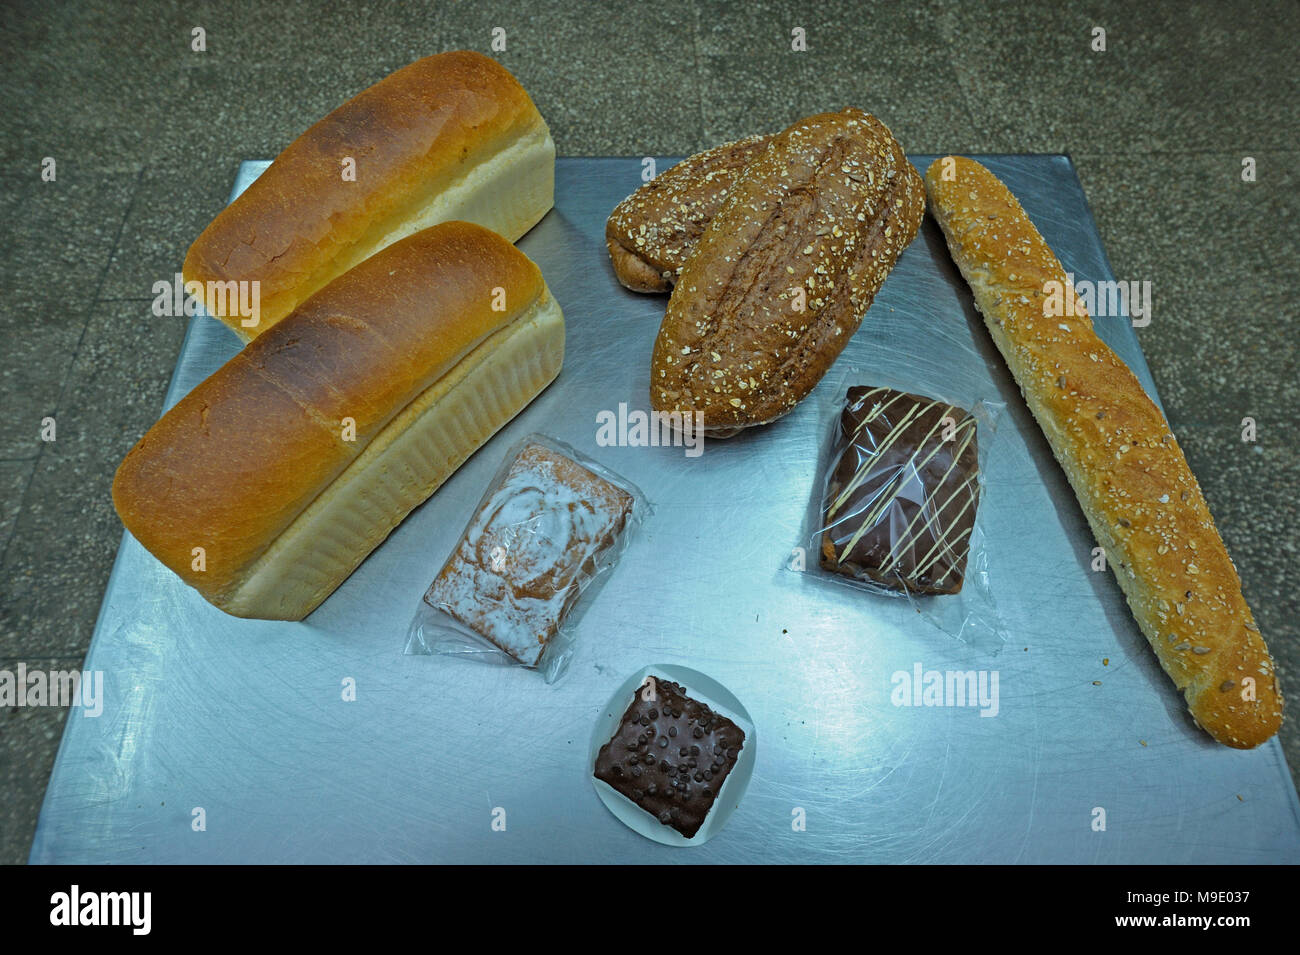 An der Holländischen Bäckerei: Backwaren auf einem Tablett gelegt: Holländische Brot, Brötchen, Muffins. März 21, 2018. Brovary, Ukraine Stockfoto